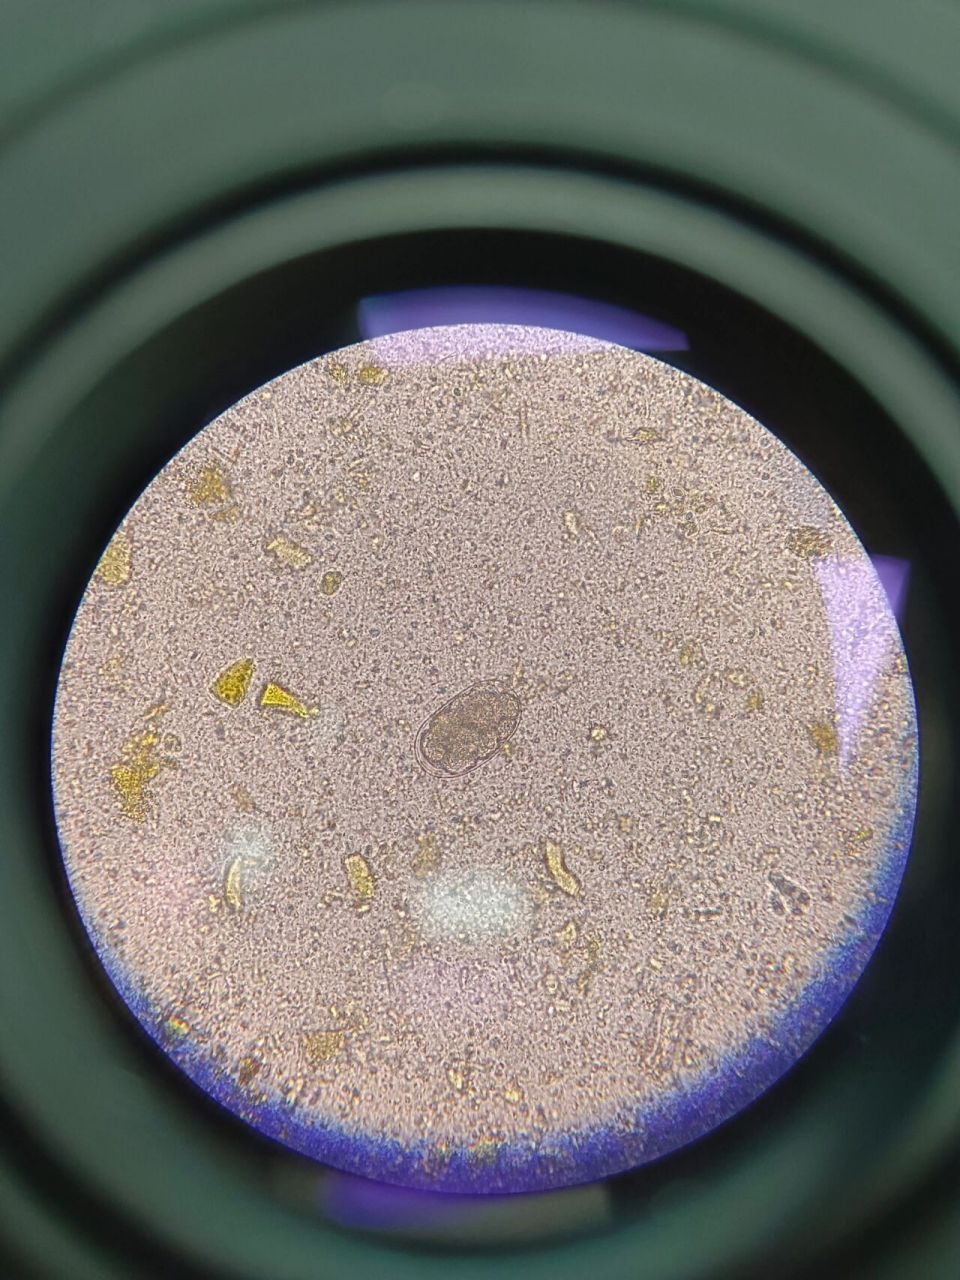 找到一典型钩虫卵 果然还是要靠显微镜94自己双眼找, 更清晰典型